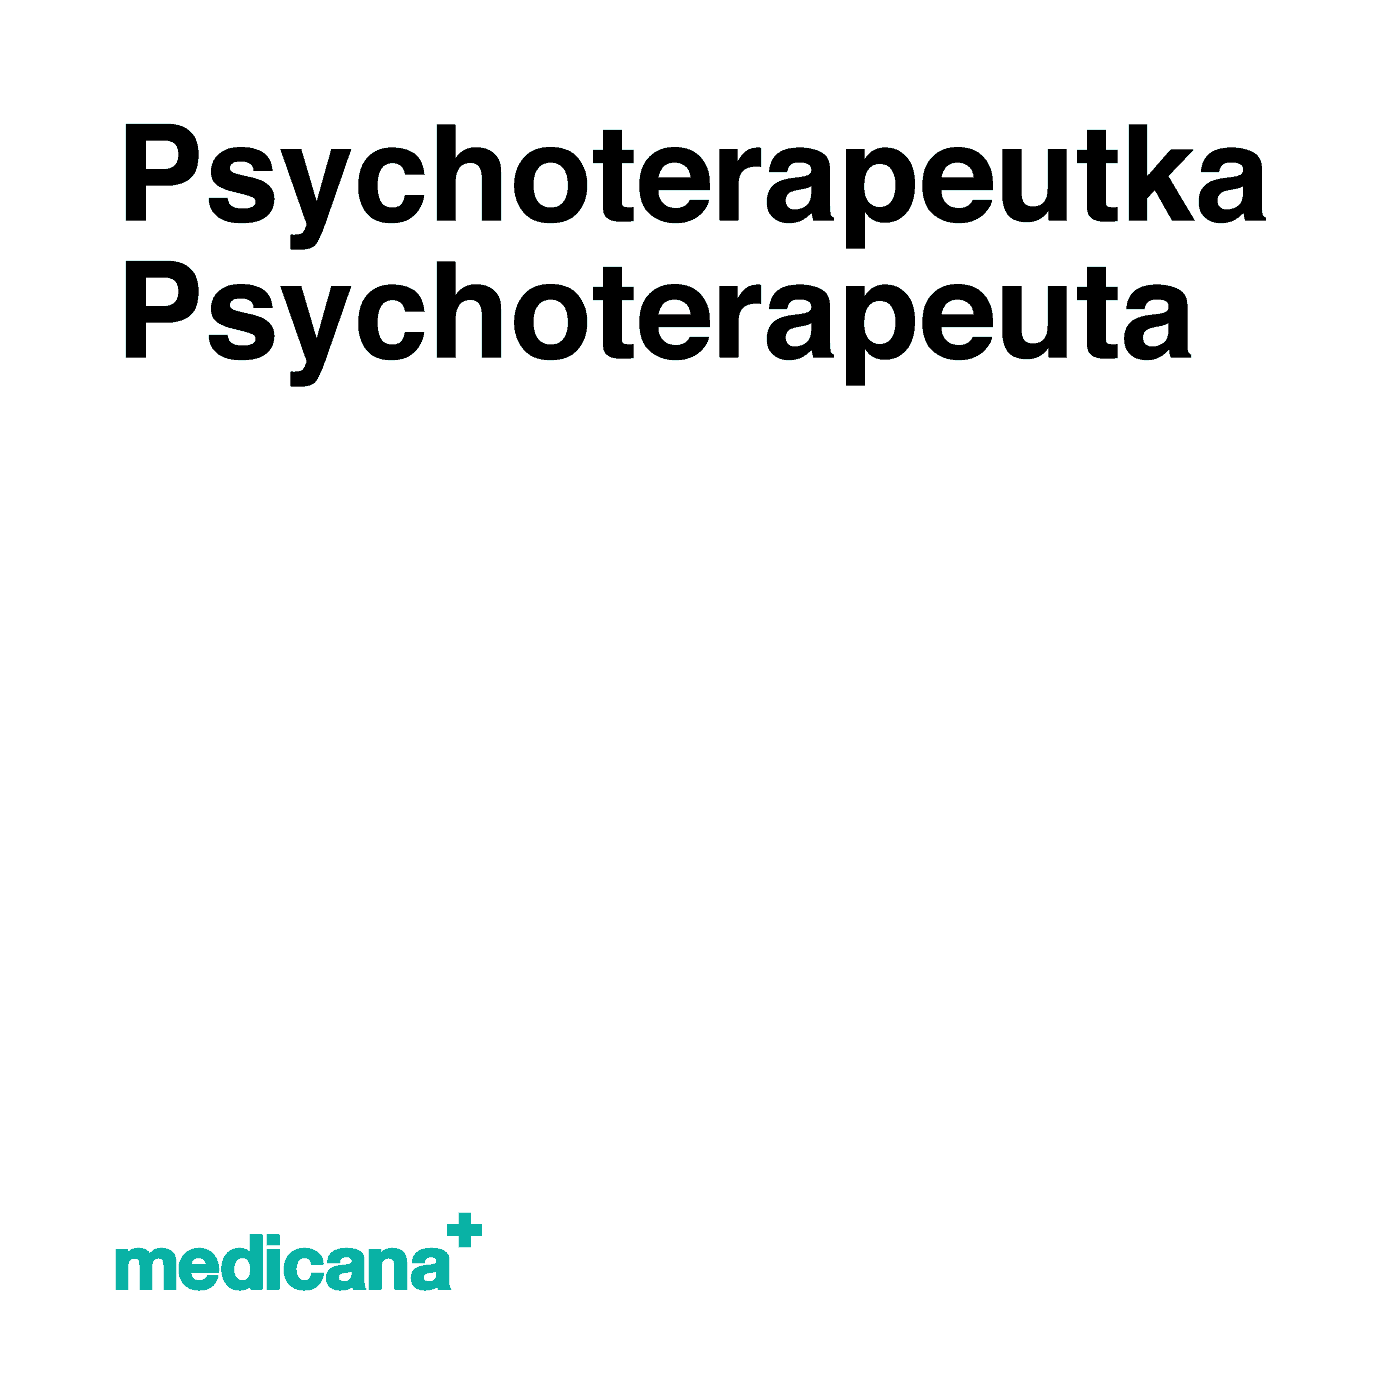 Ilustracja, białe tło i czarny napis w lewym górnym narożniku "Psychoterapeutka, psychoterapeuta" i logo Medicana Centrum Terapii Medyczna Marihuana w lewym dolnym rogu.